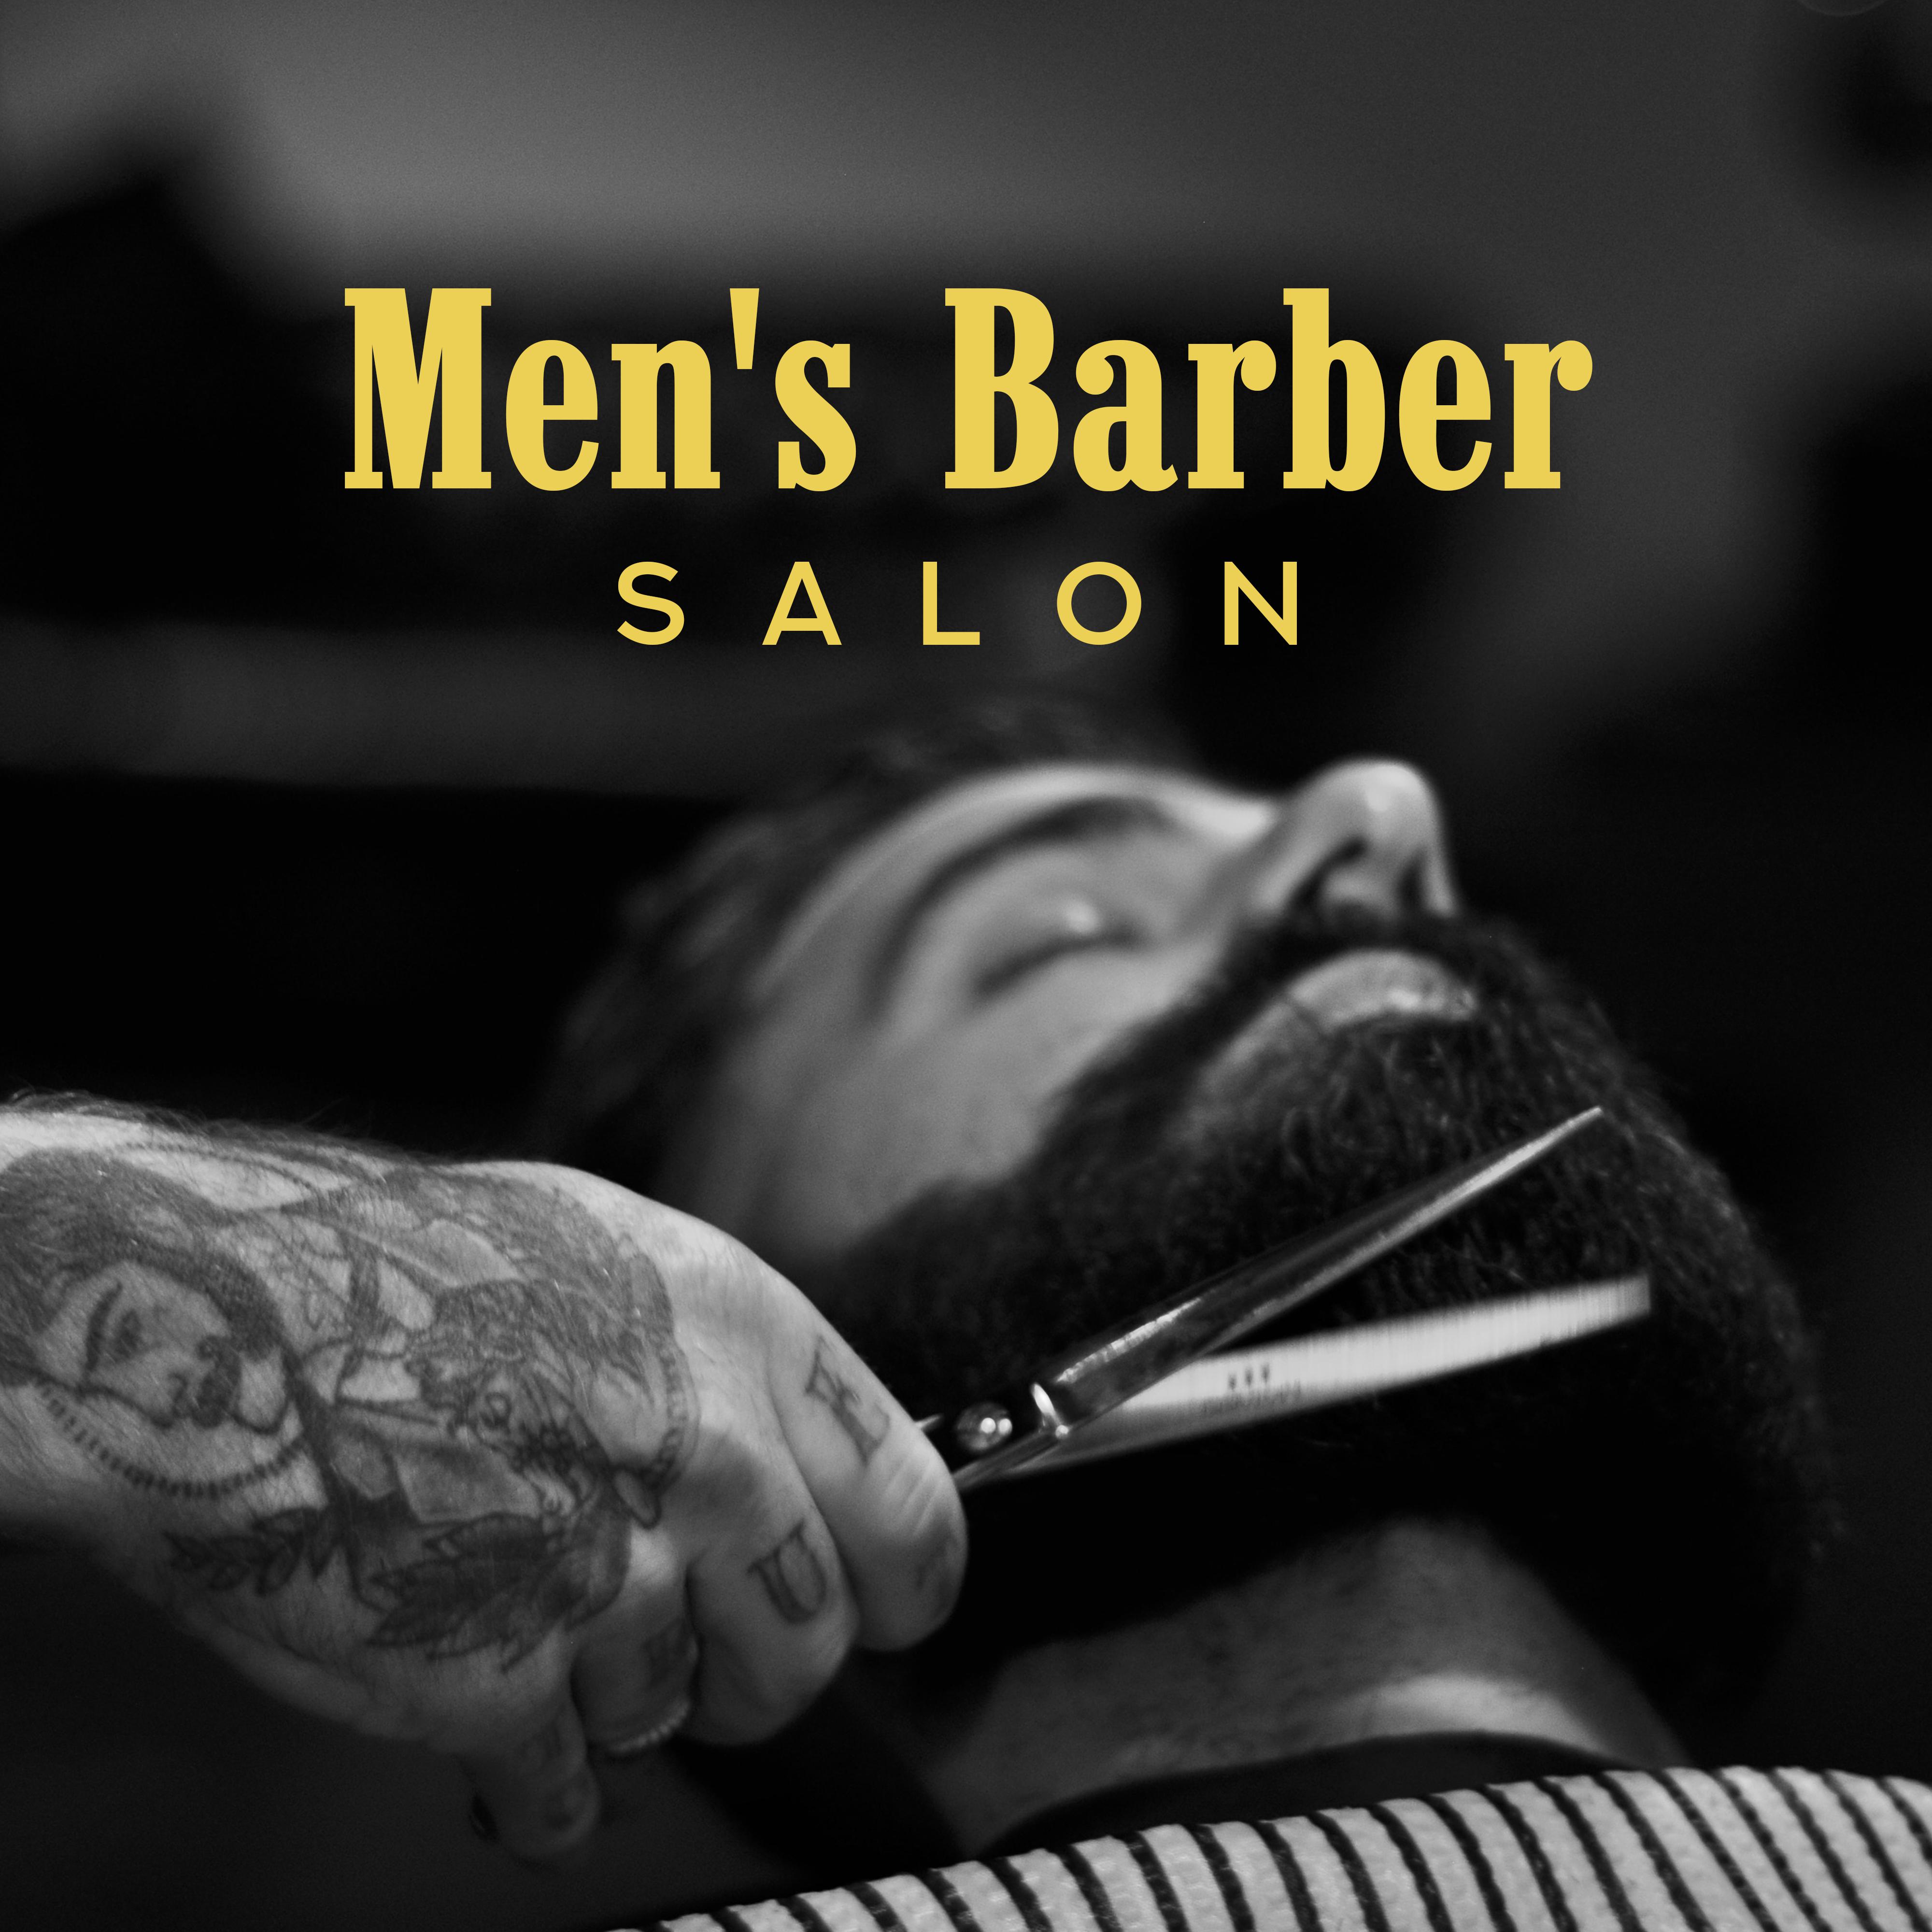 Men's Barber Salon